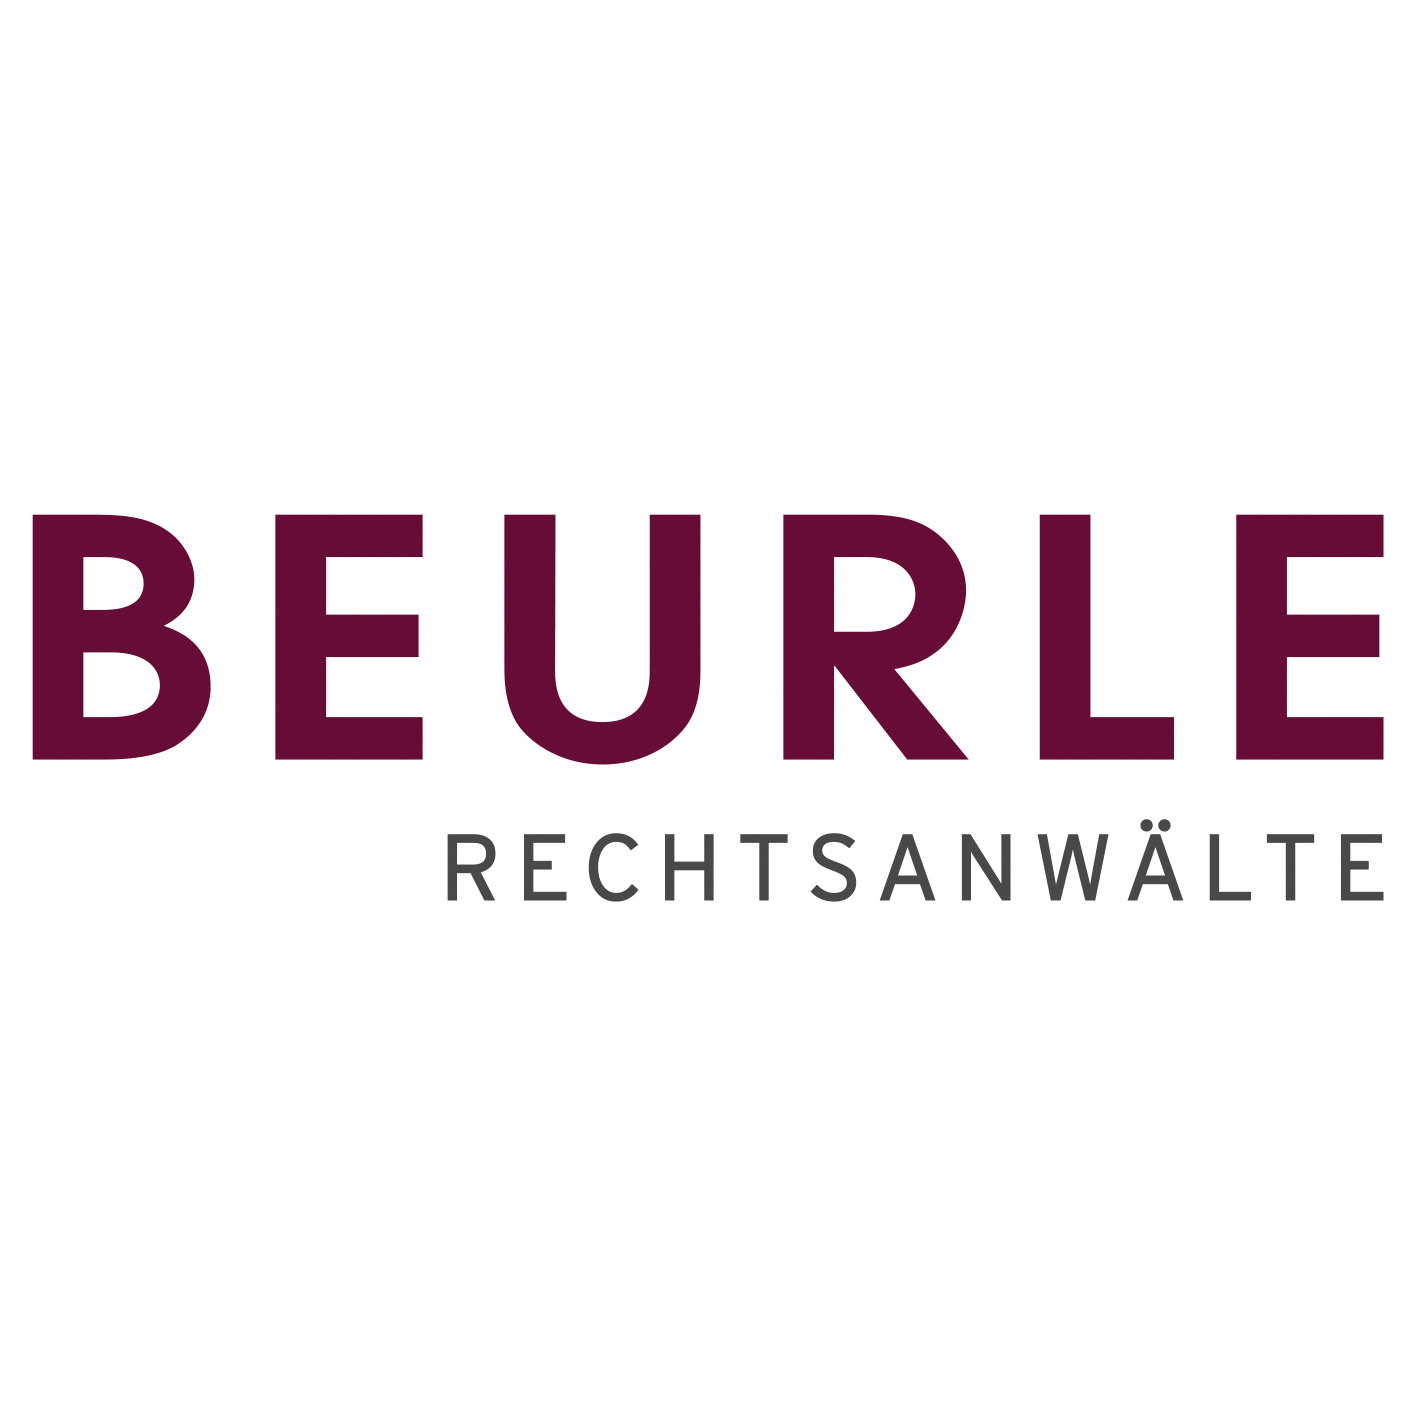 BEURLE Rechtsanwälte GmbH & Co KG - Law Firm - Linz - 0732 7716530 Austria | ShowMeLocal.com